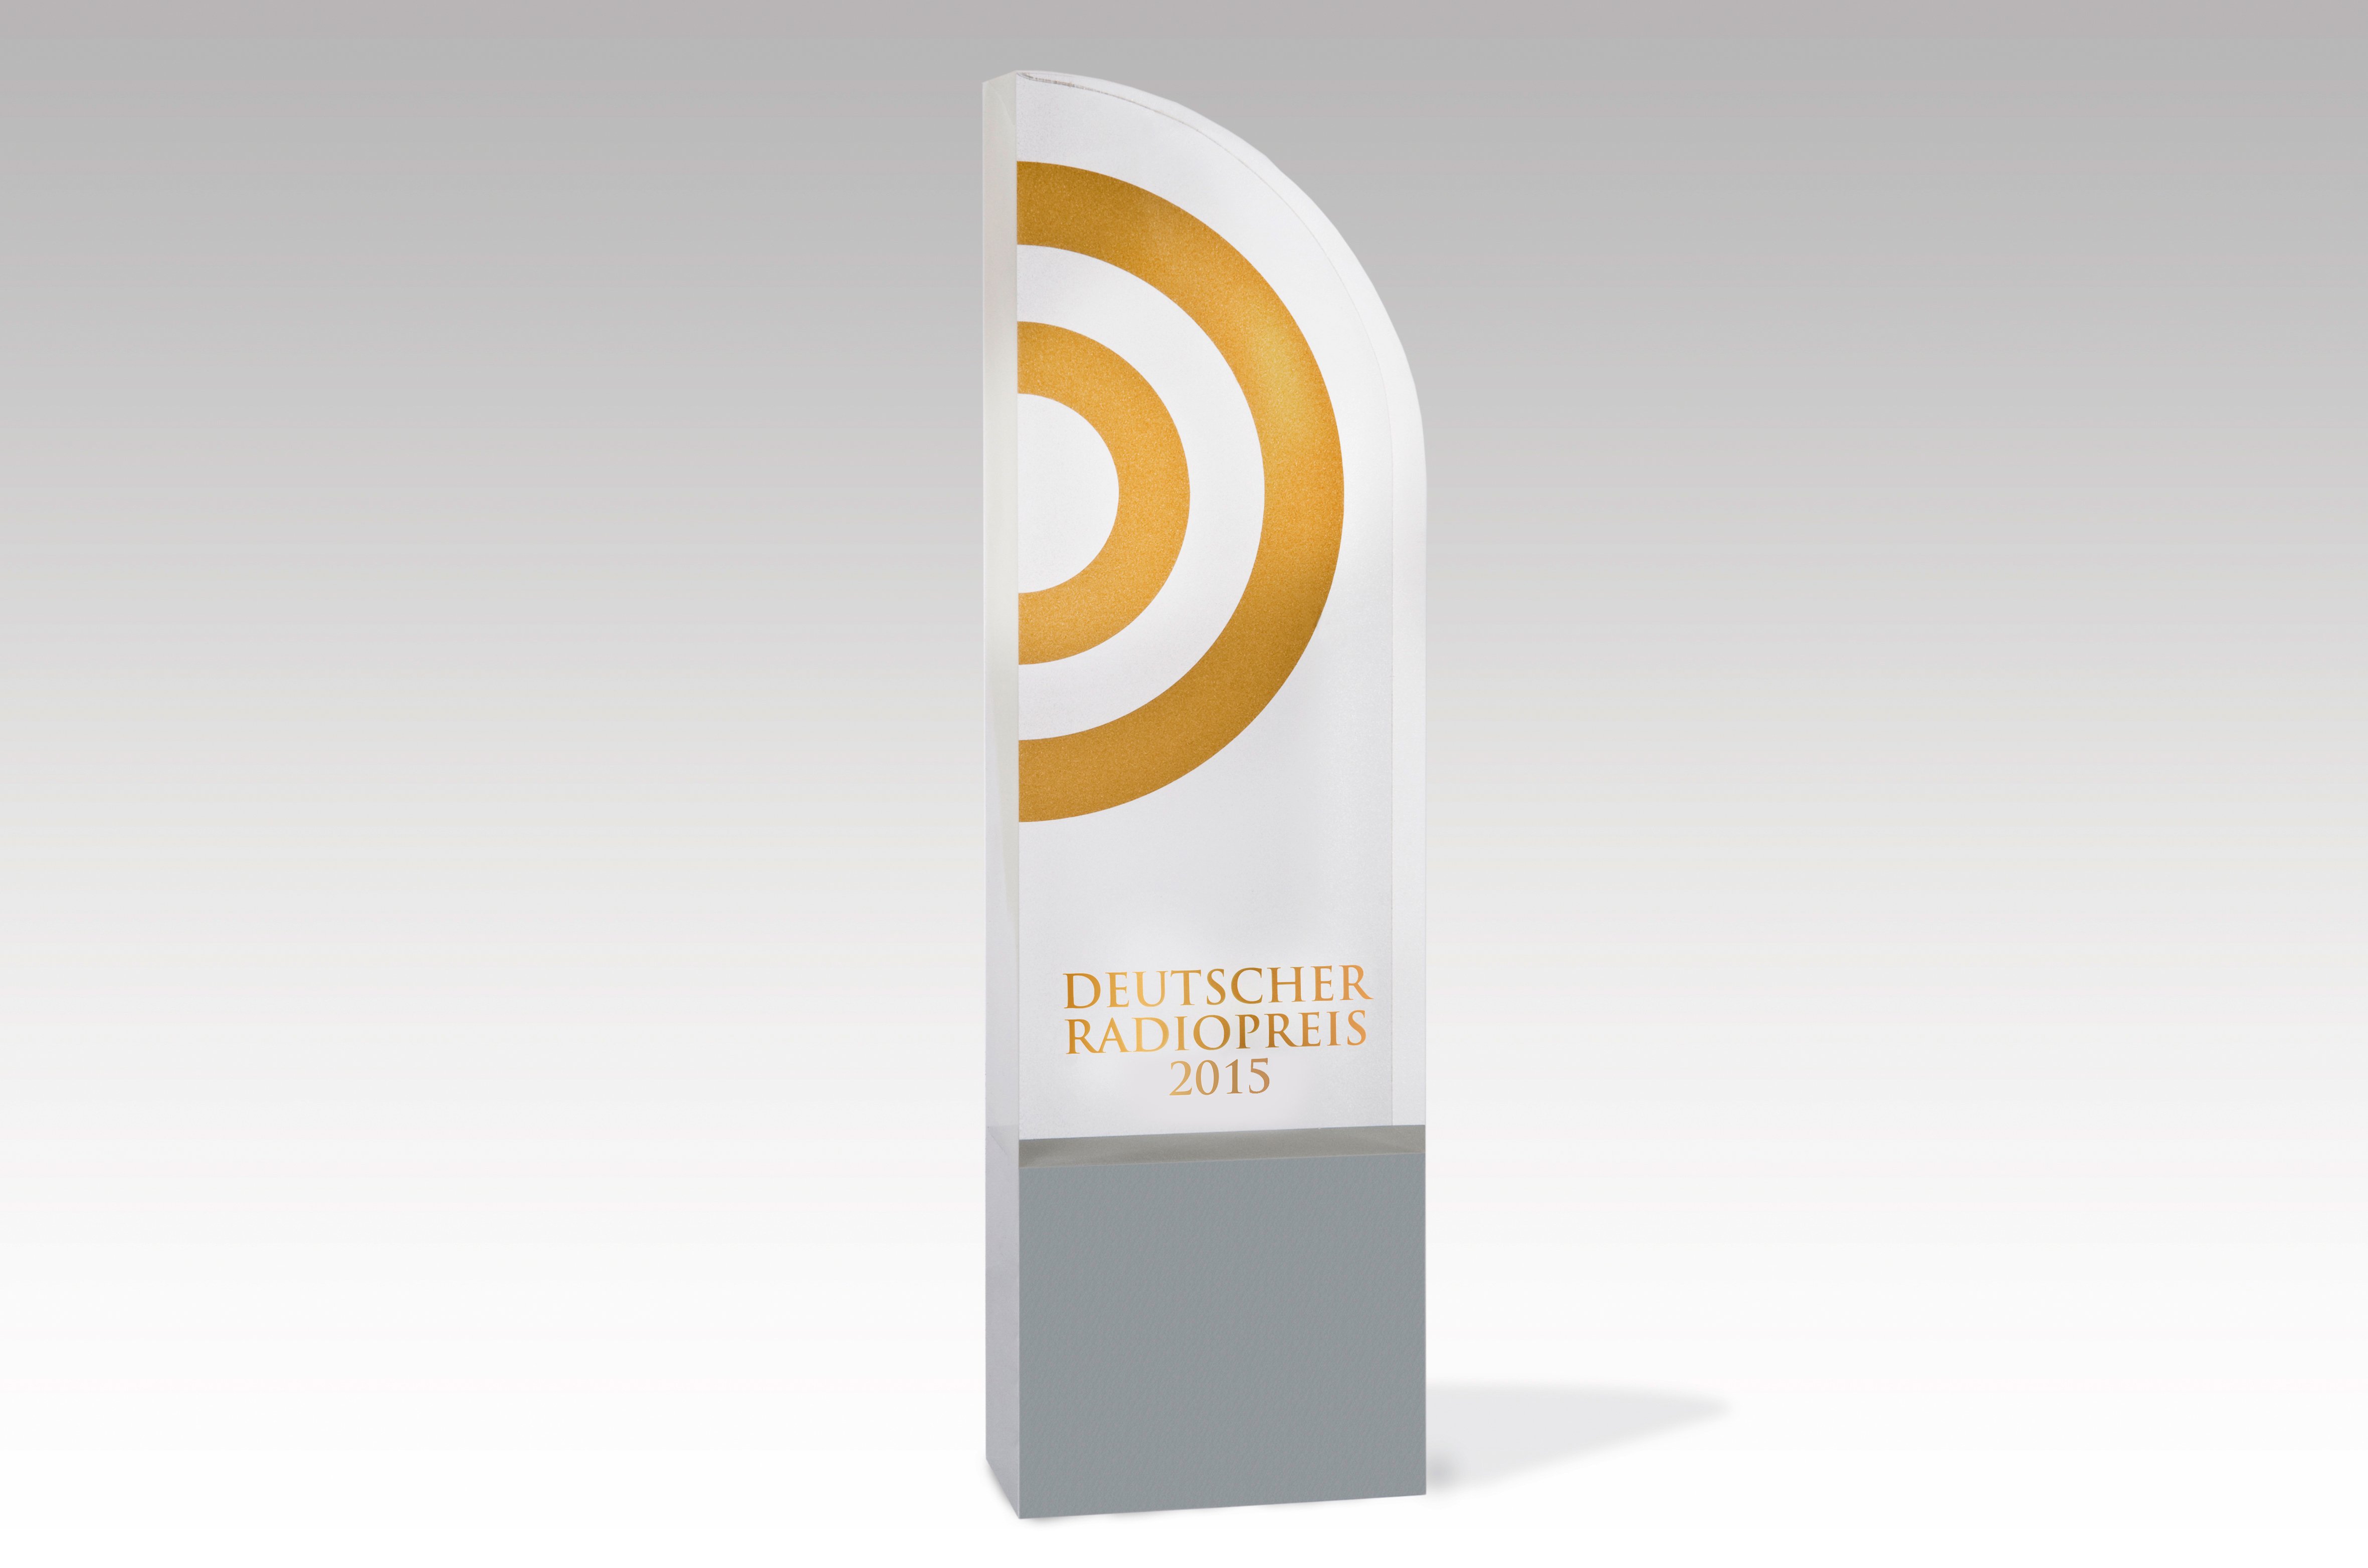 deutscher radiopreis 2015 award